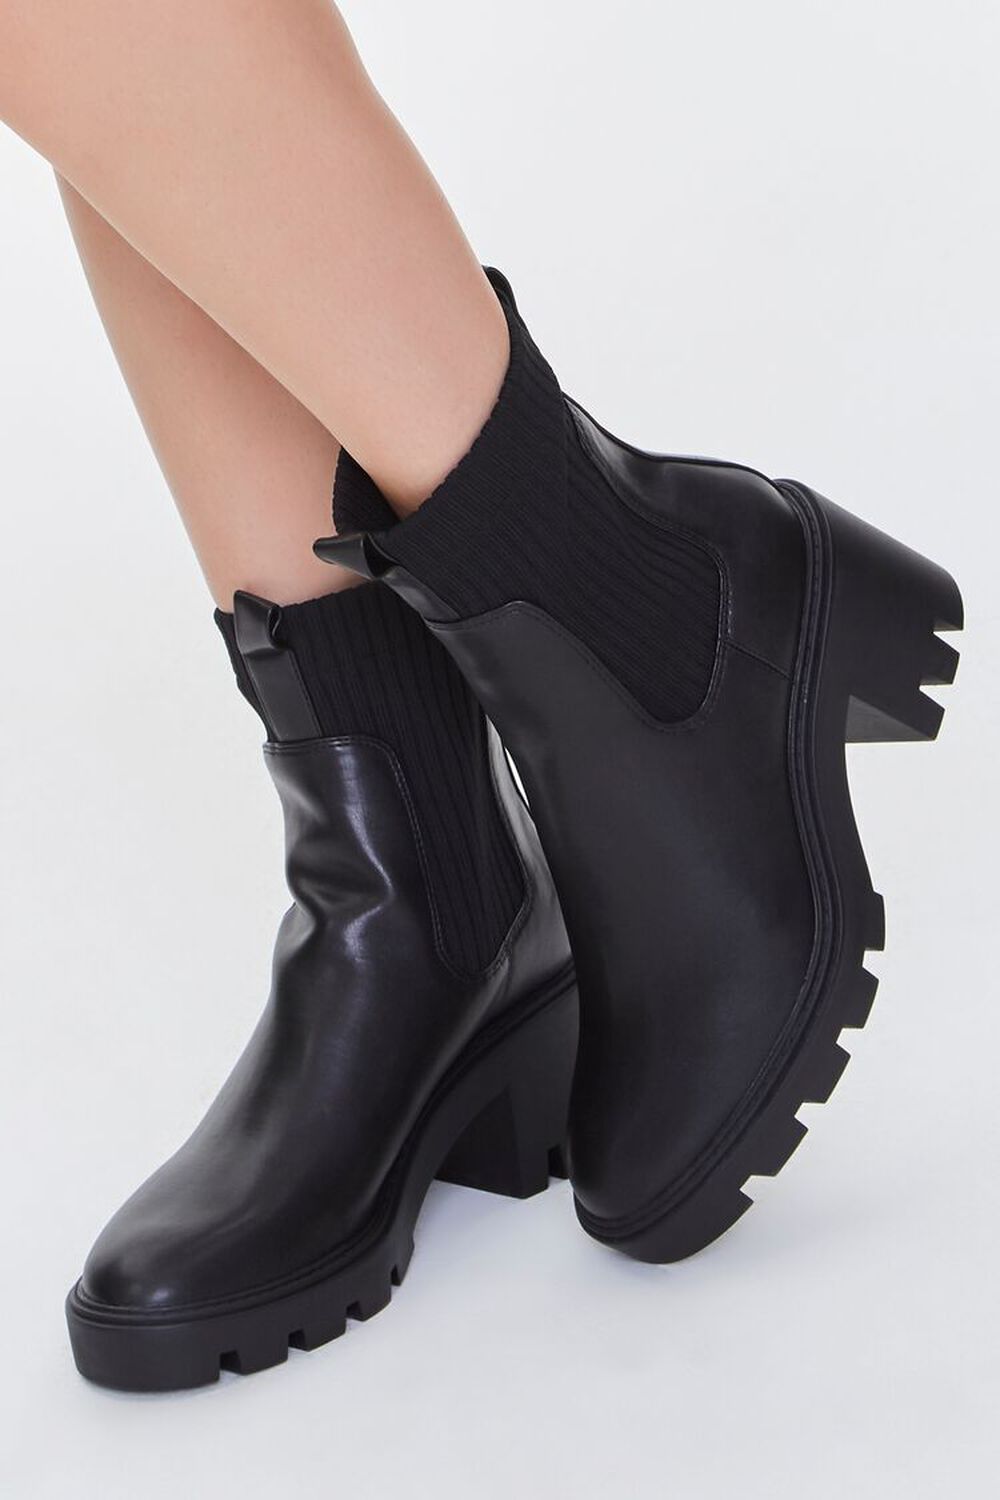 BLACK Faux Leather Platform Chelsea Boots, image 1